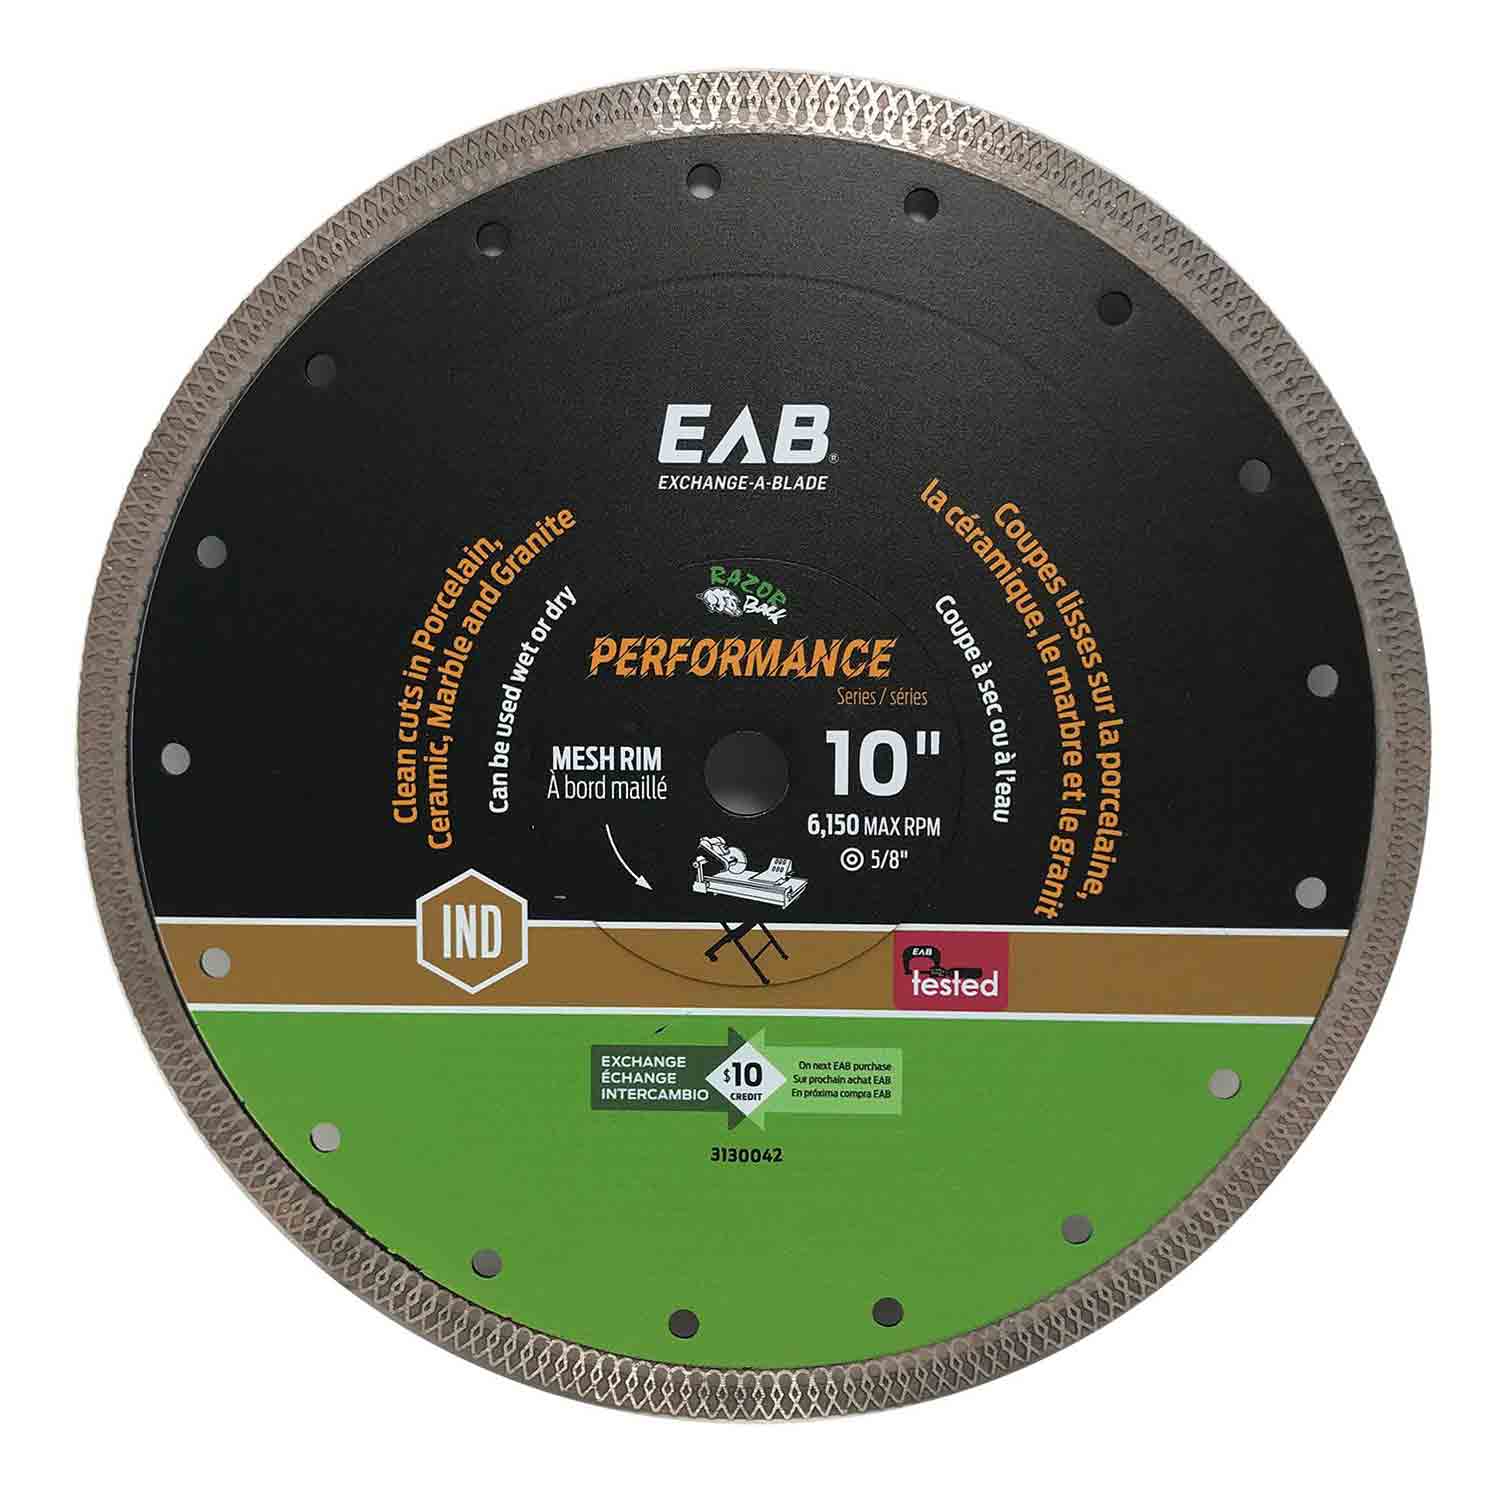 EAB (3130042) product